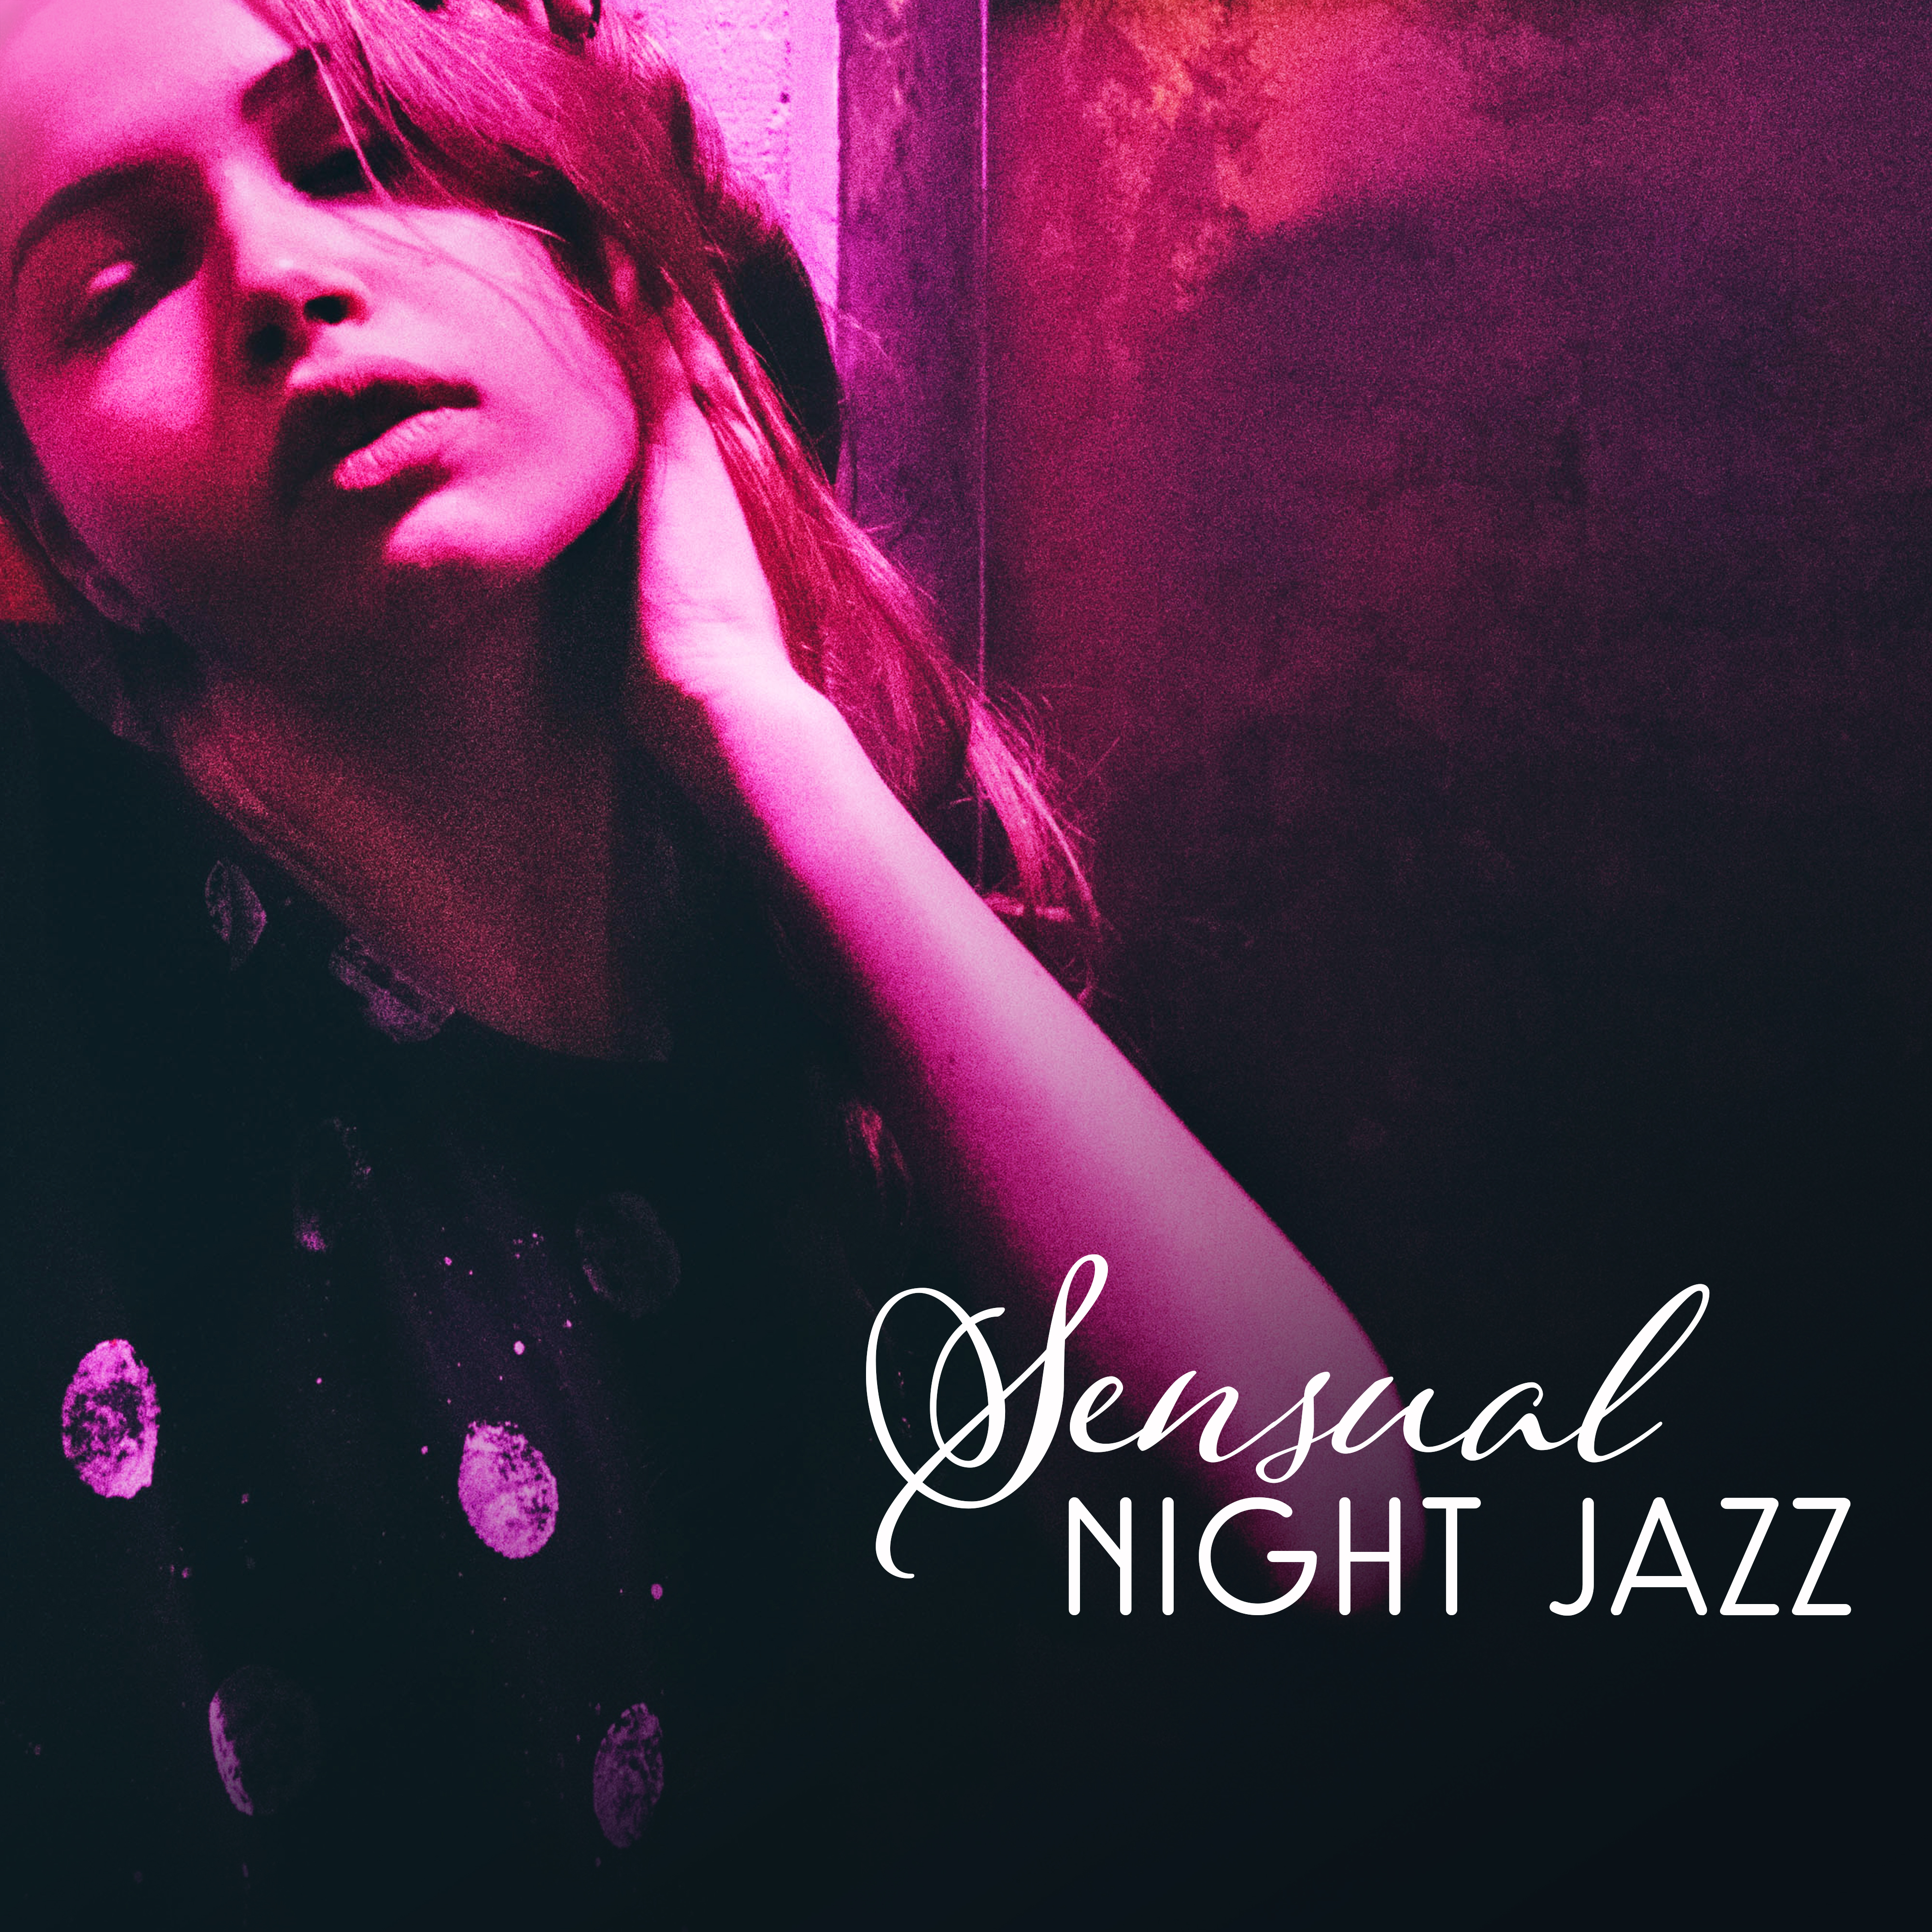 Sensual Night Jazz